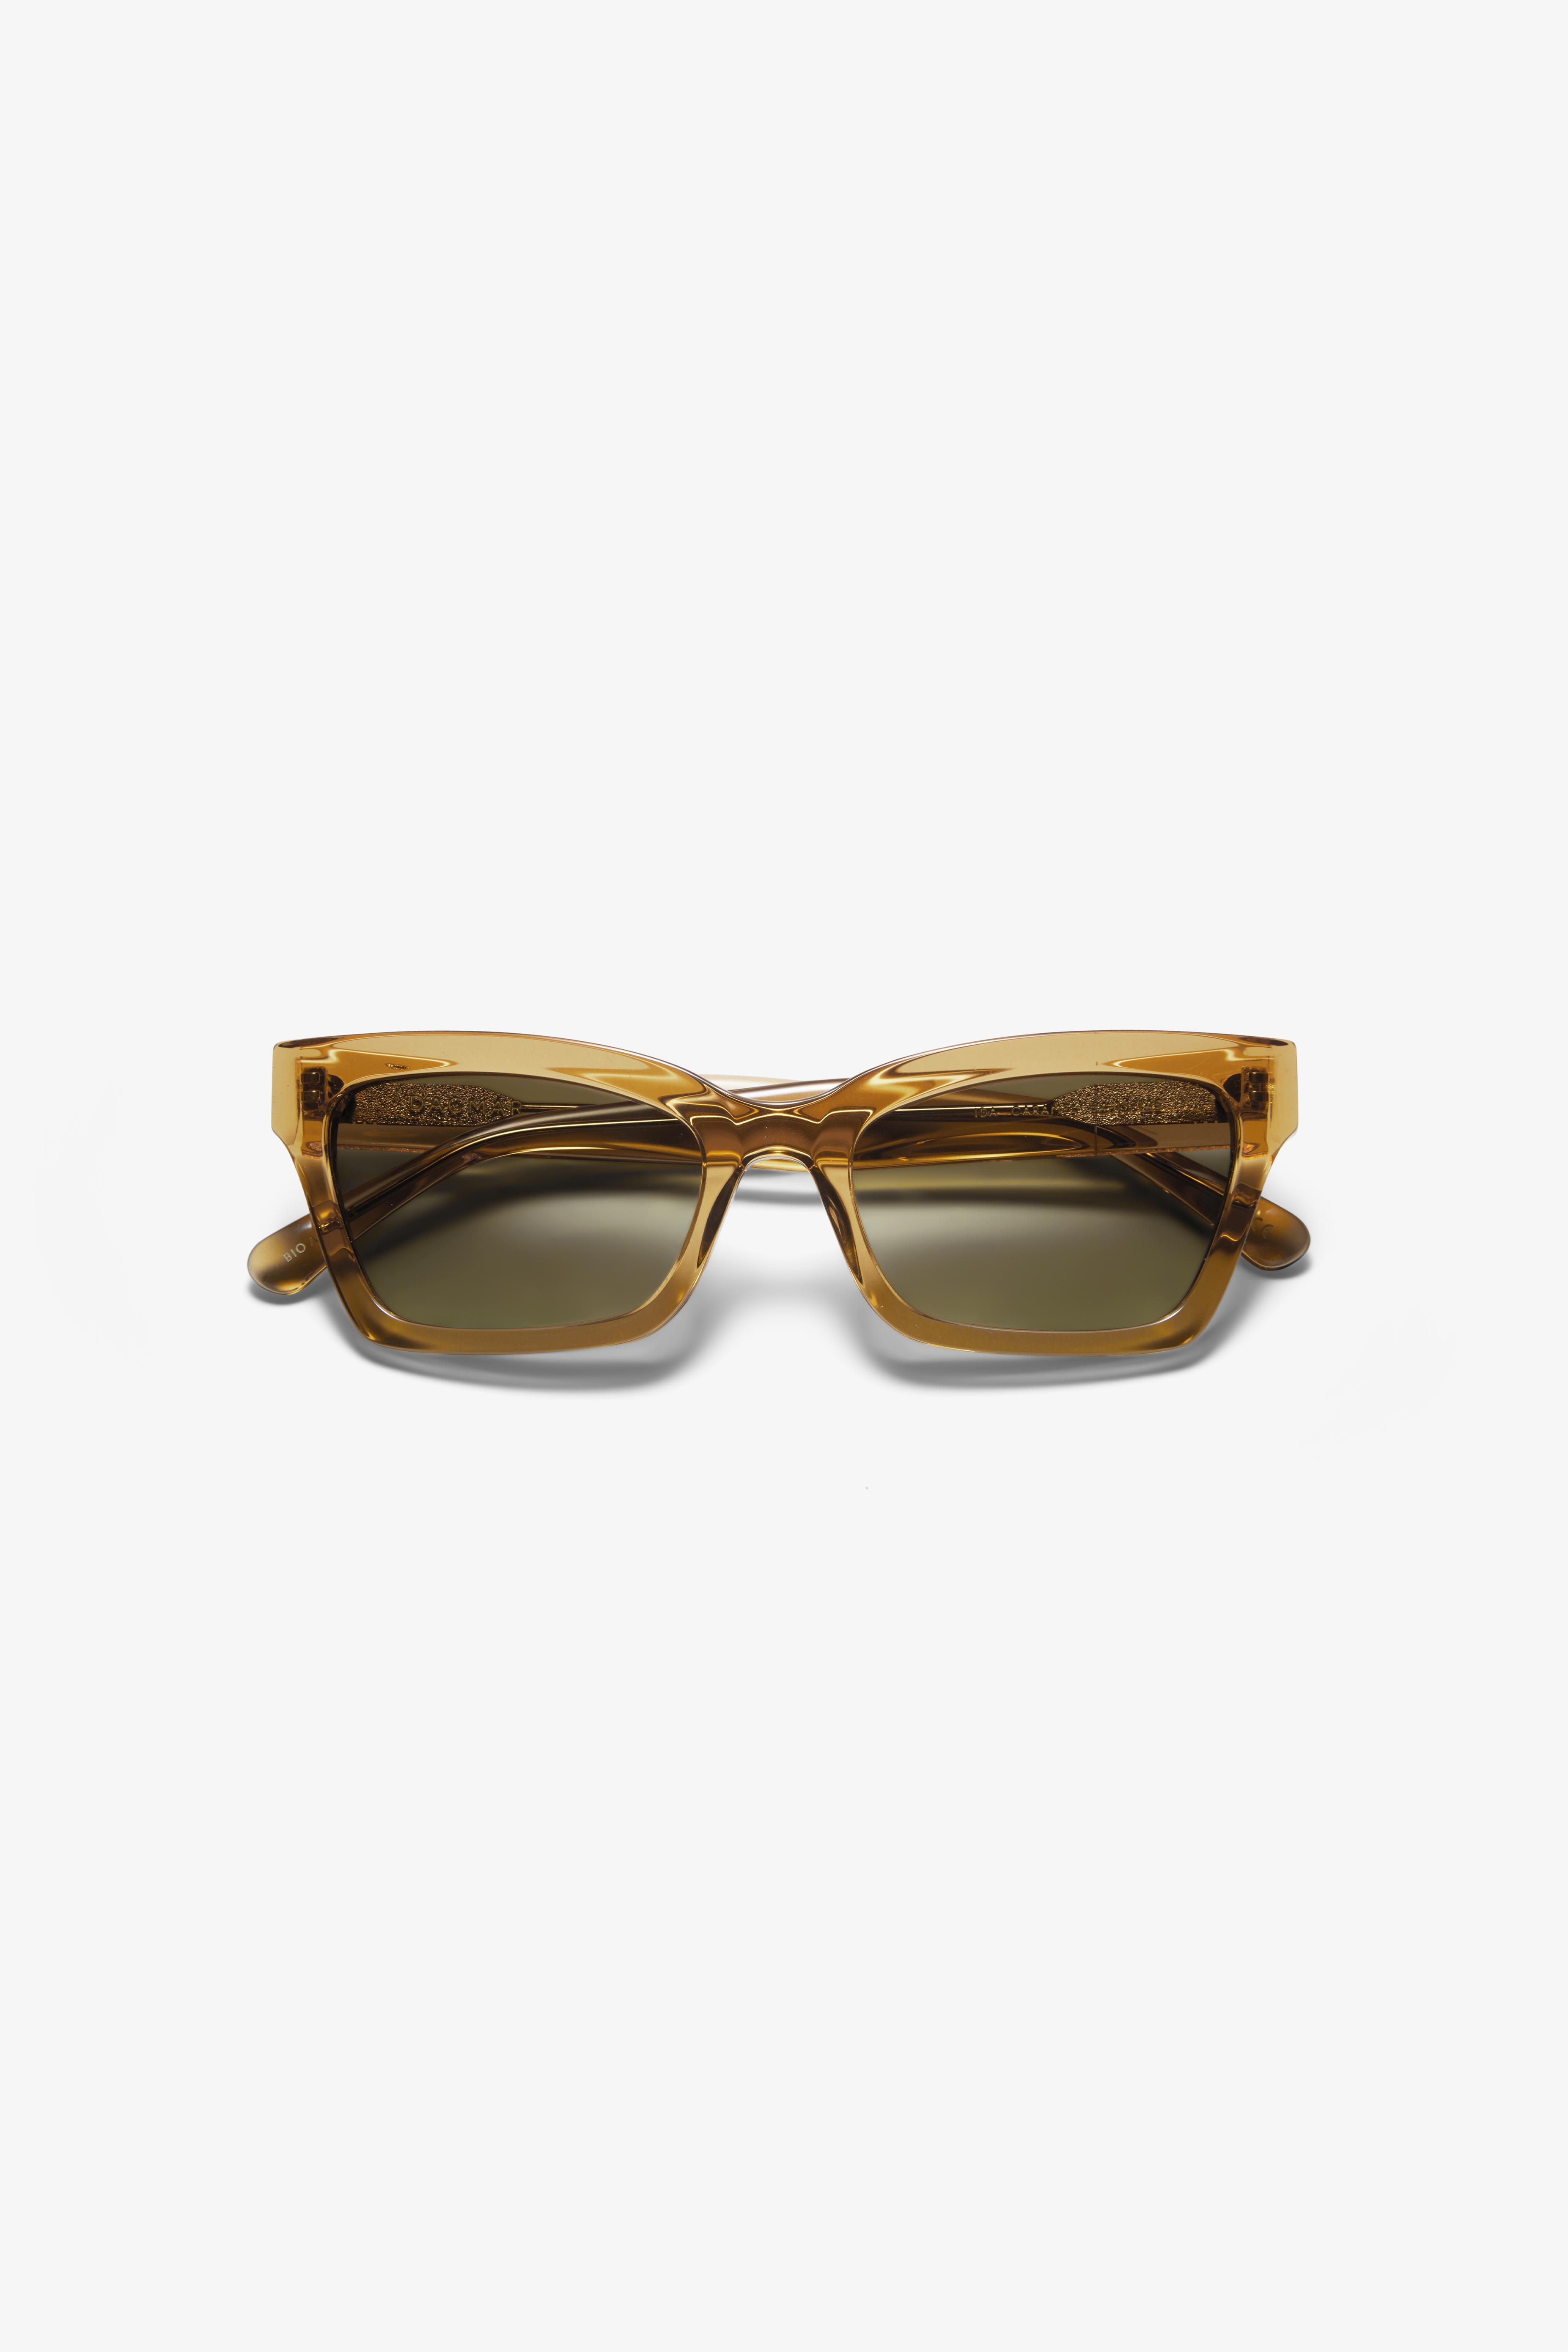 Angled sunglasses för 1260 kr på Dagmar